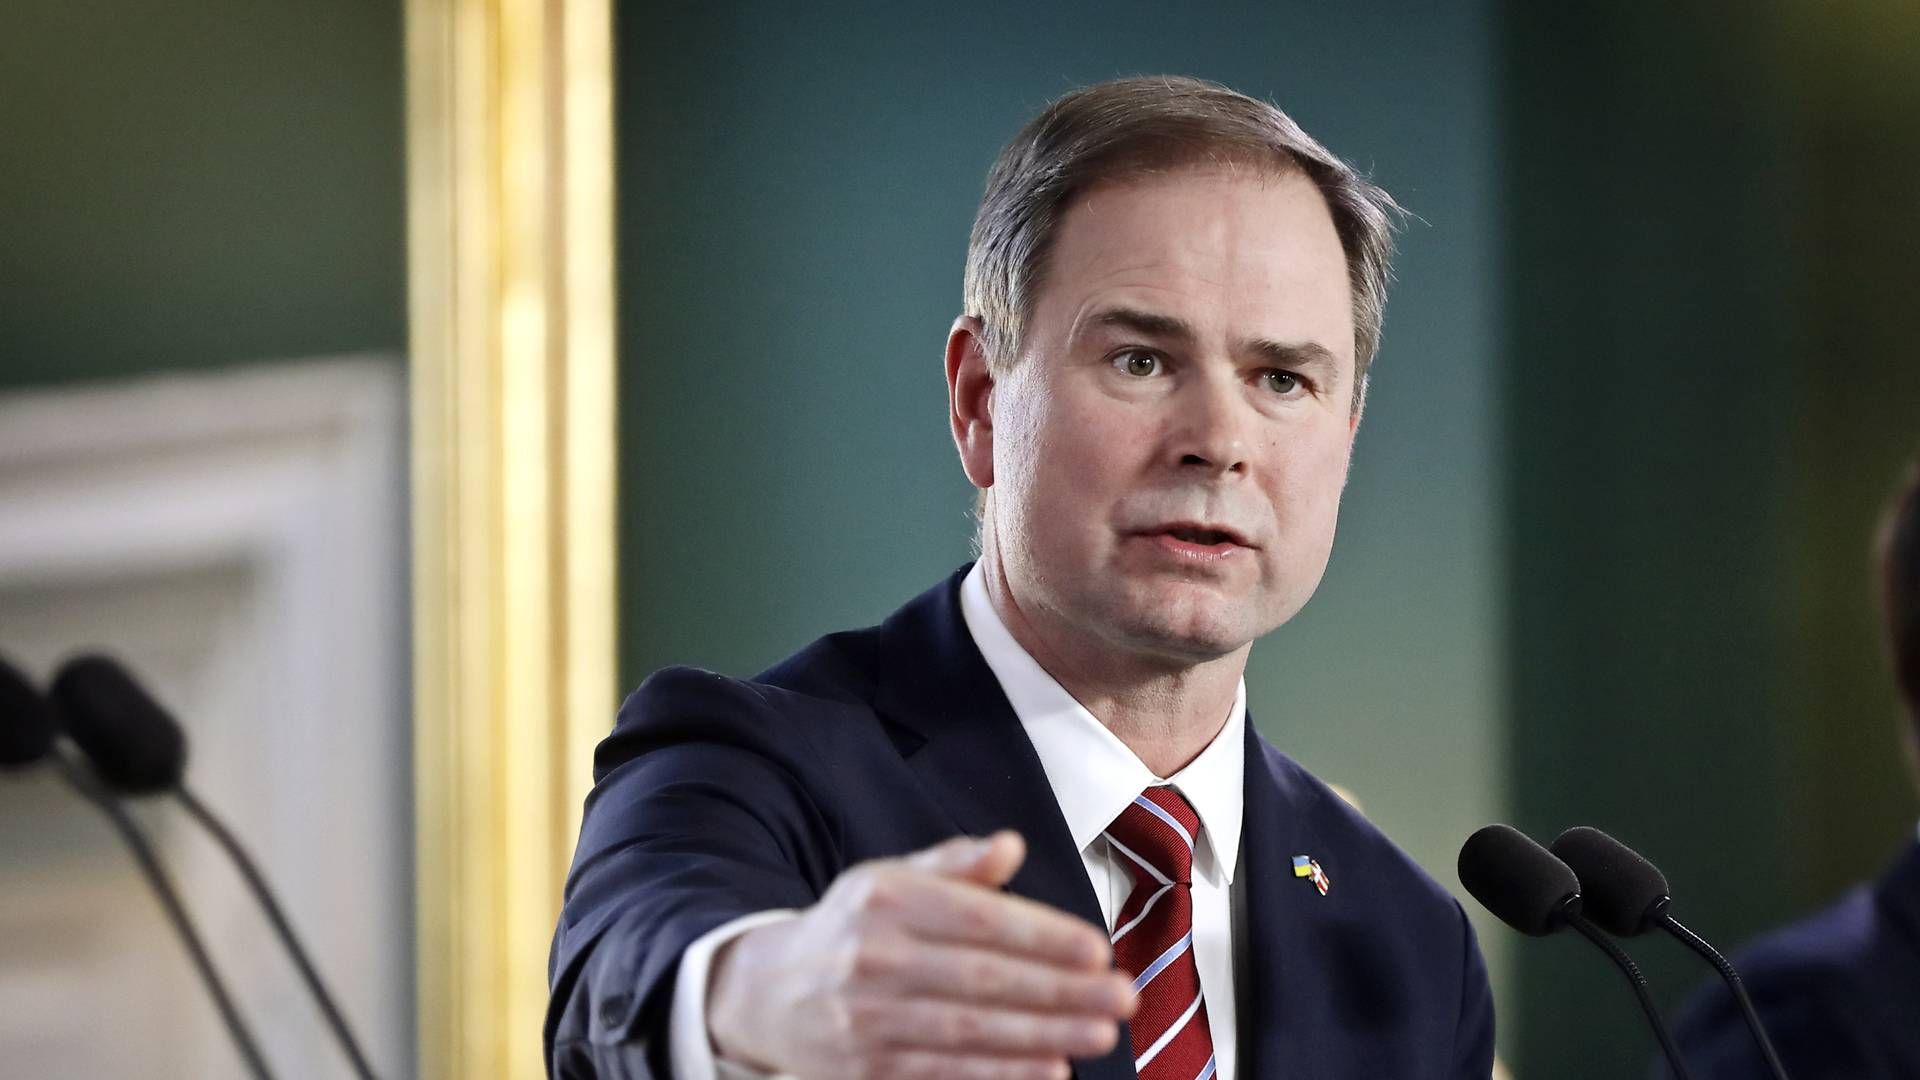 Regeringen og finansminister Nicolai Wammen (S) må give tabt på forslag. | Foto: Jens Dresling